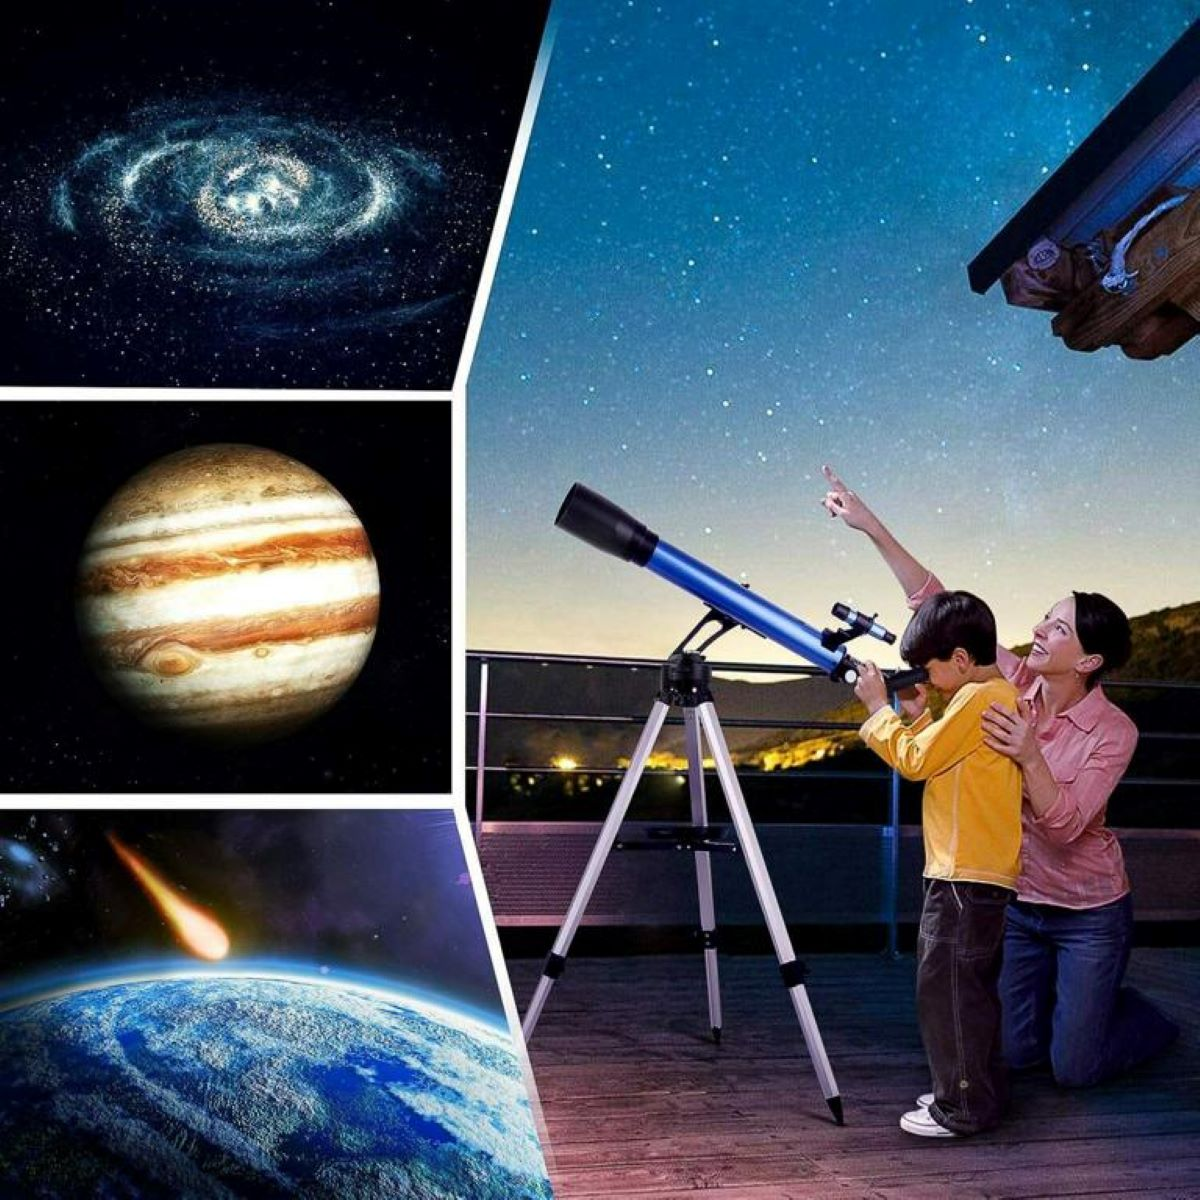 28x, 117x, TELMU Binocular 60 Teleskop mm,